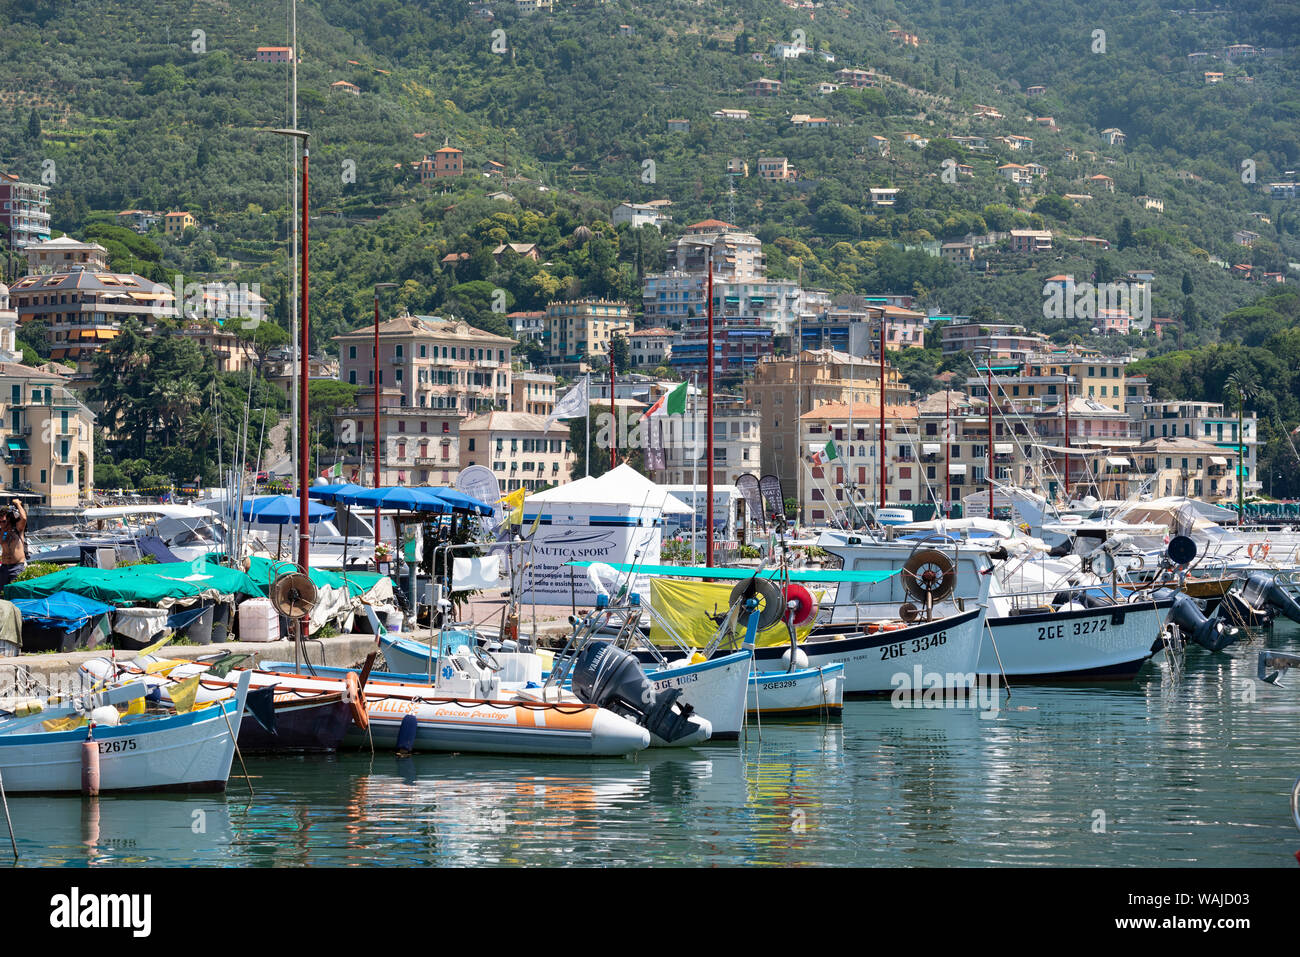 Italie, Province de Gênes, Rapallo. Bateaux dans le port et sur la colline Banque D'Images